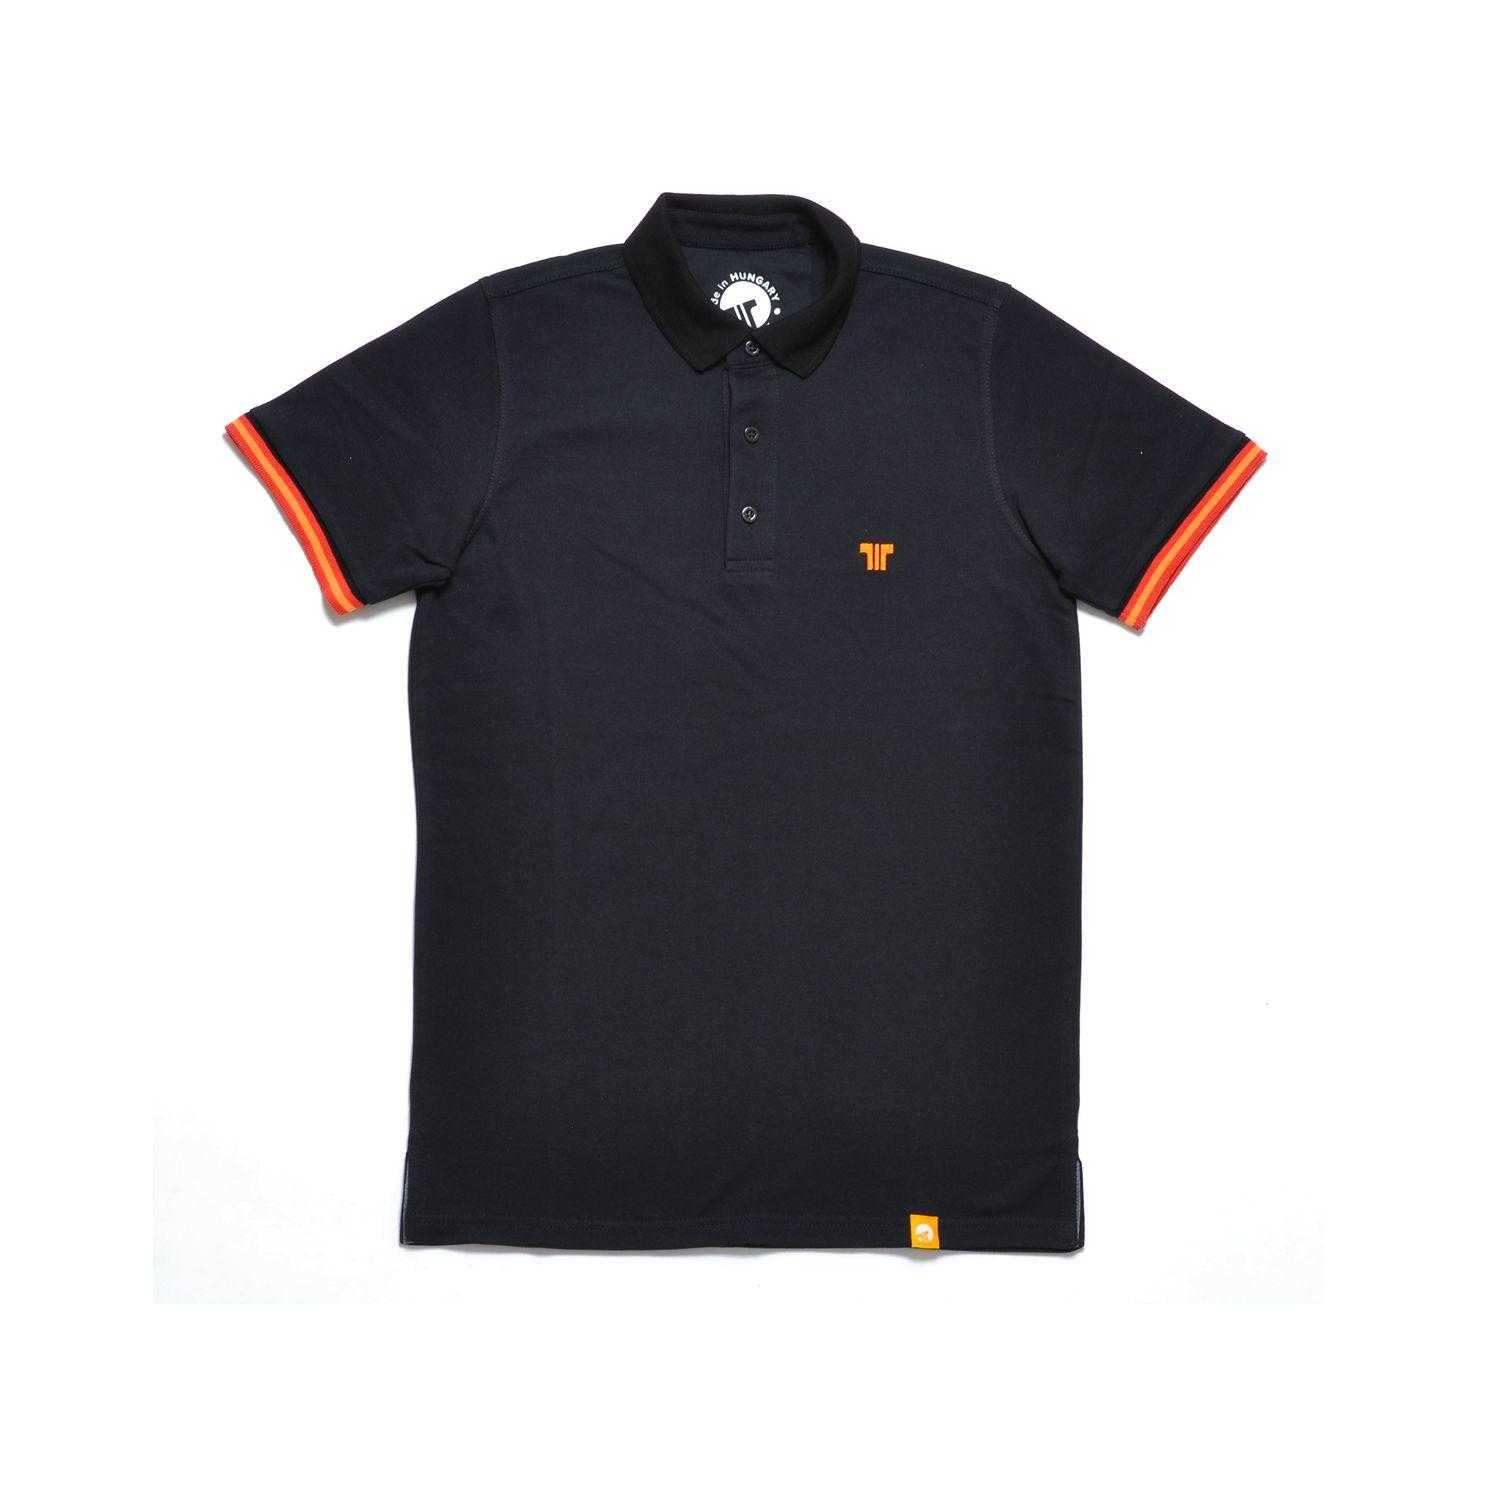 Tennis Shirt Brand Logo - Black Orange